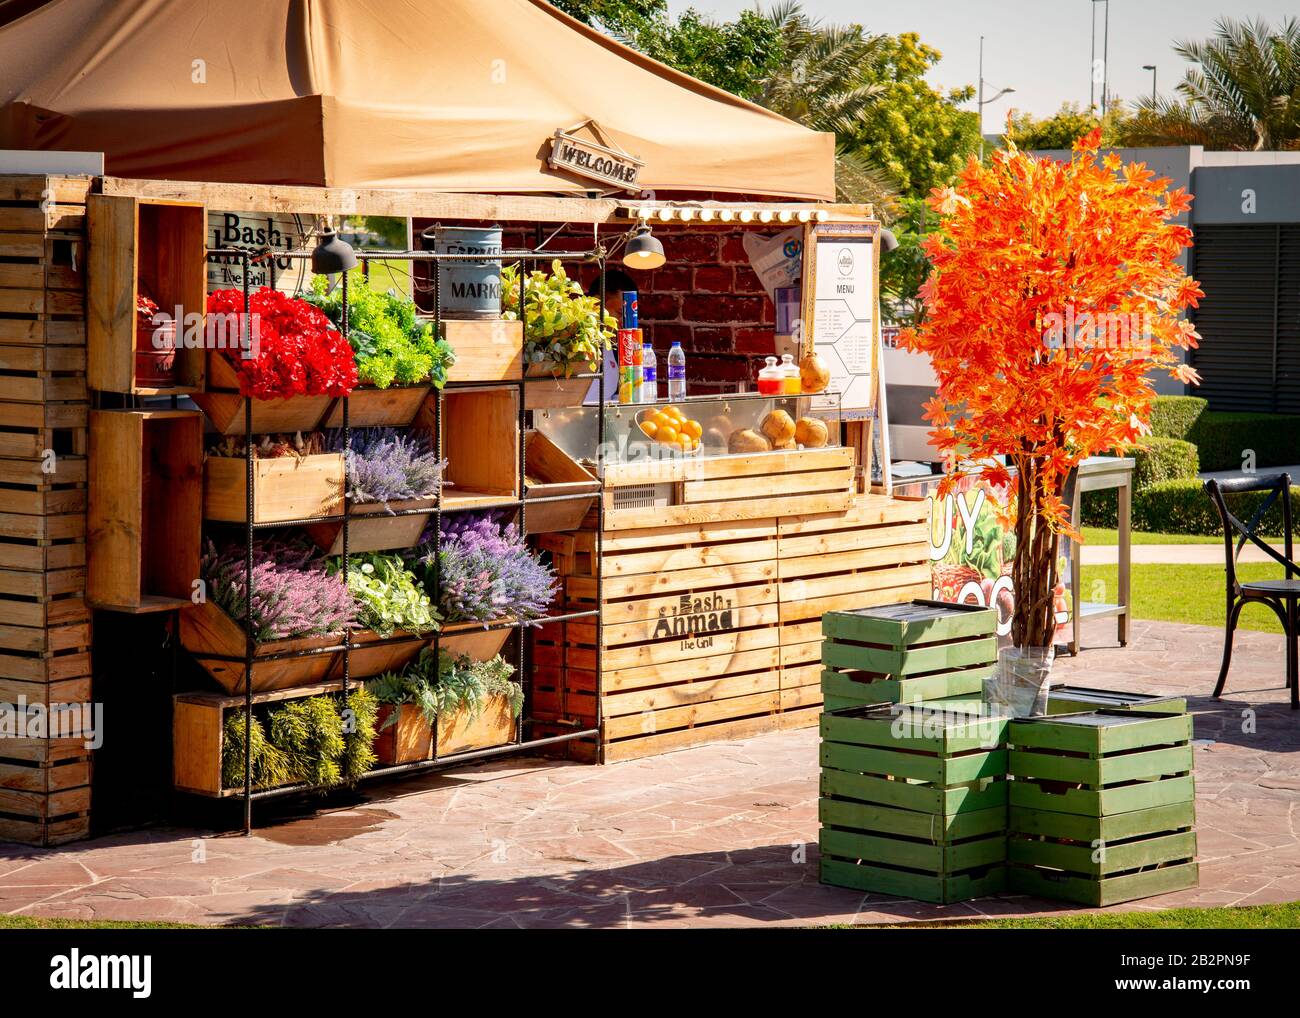 Colourful Street food vendor Stock Photo